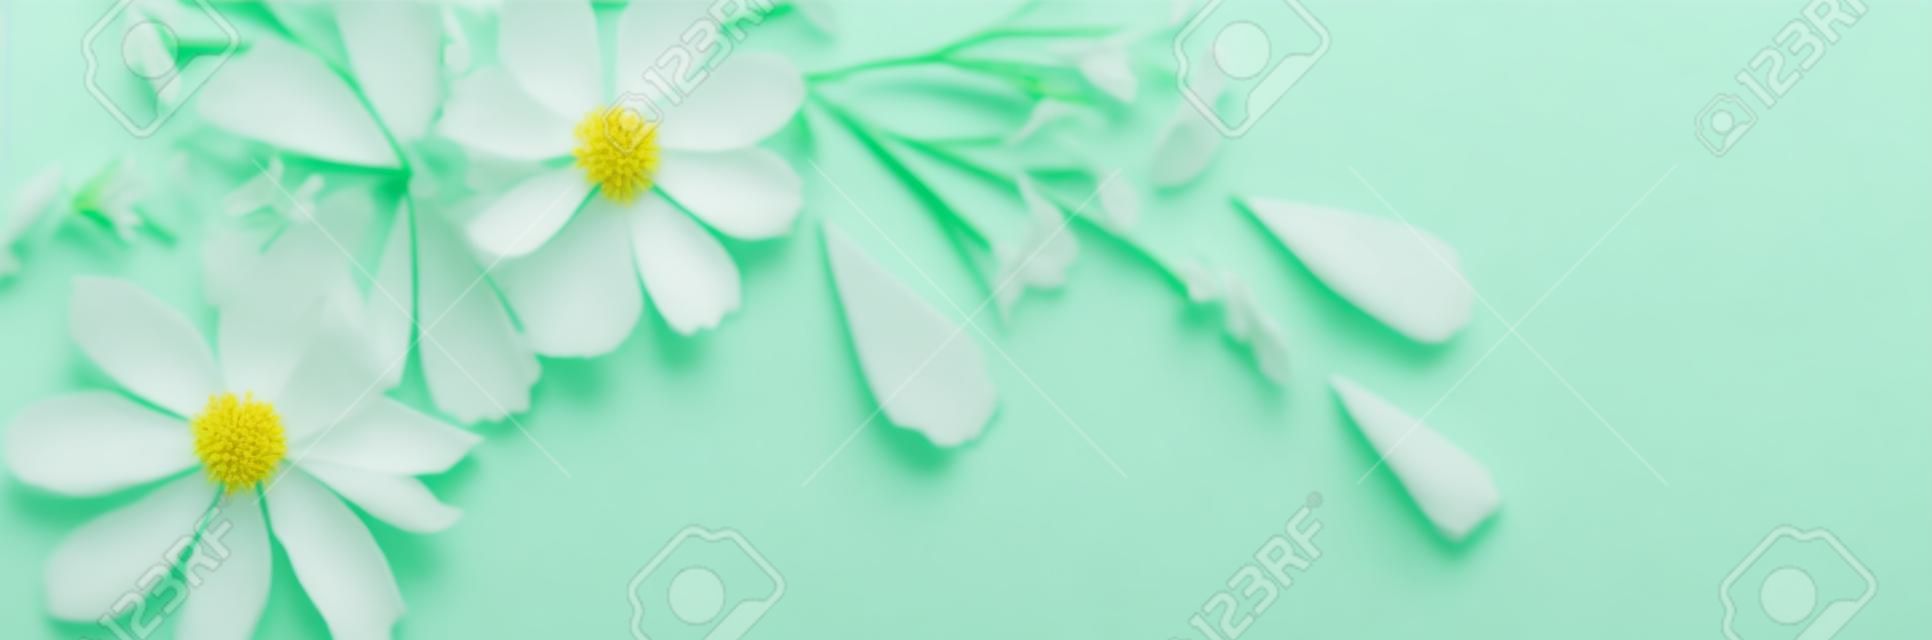 fleurs blanches sur fond de papier vert